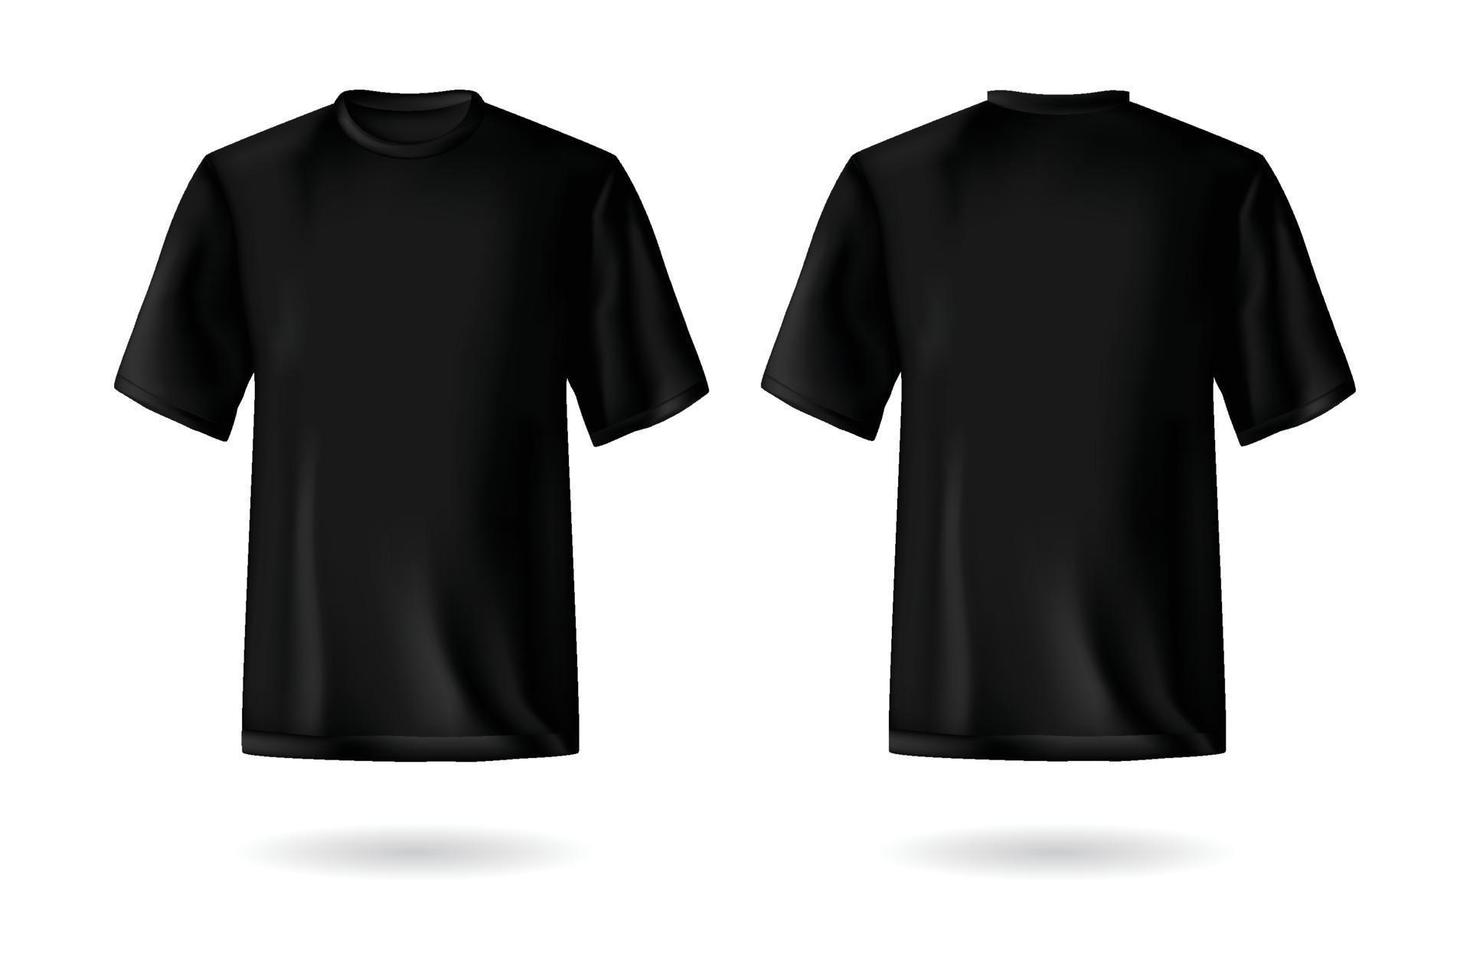 réaliste noir T-shirt moquer en haut modèle vecteur